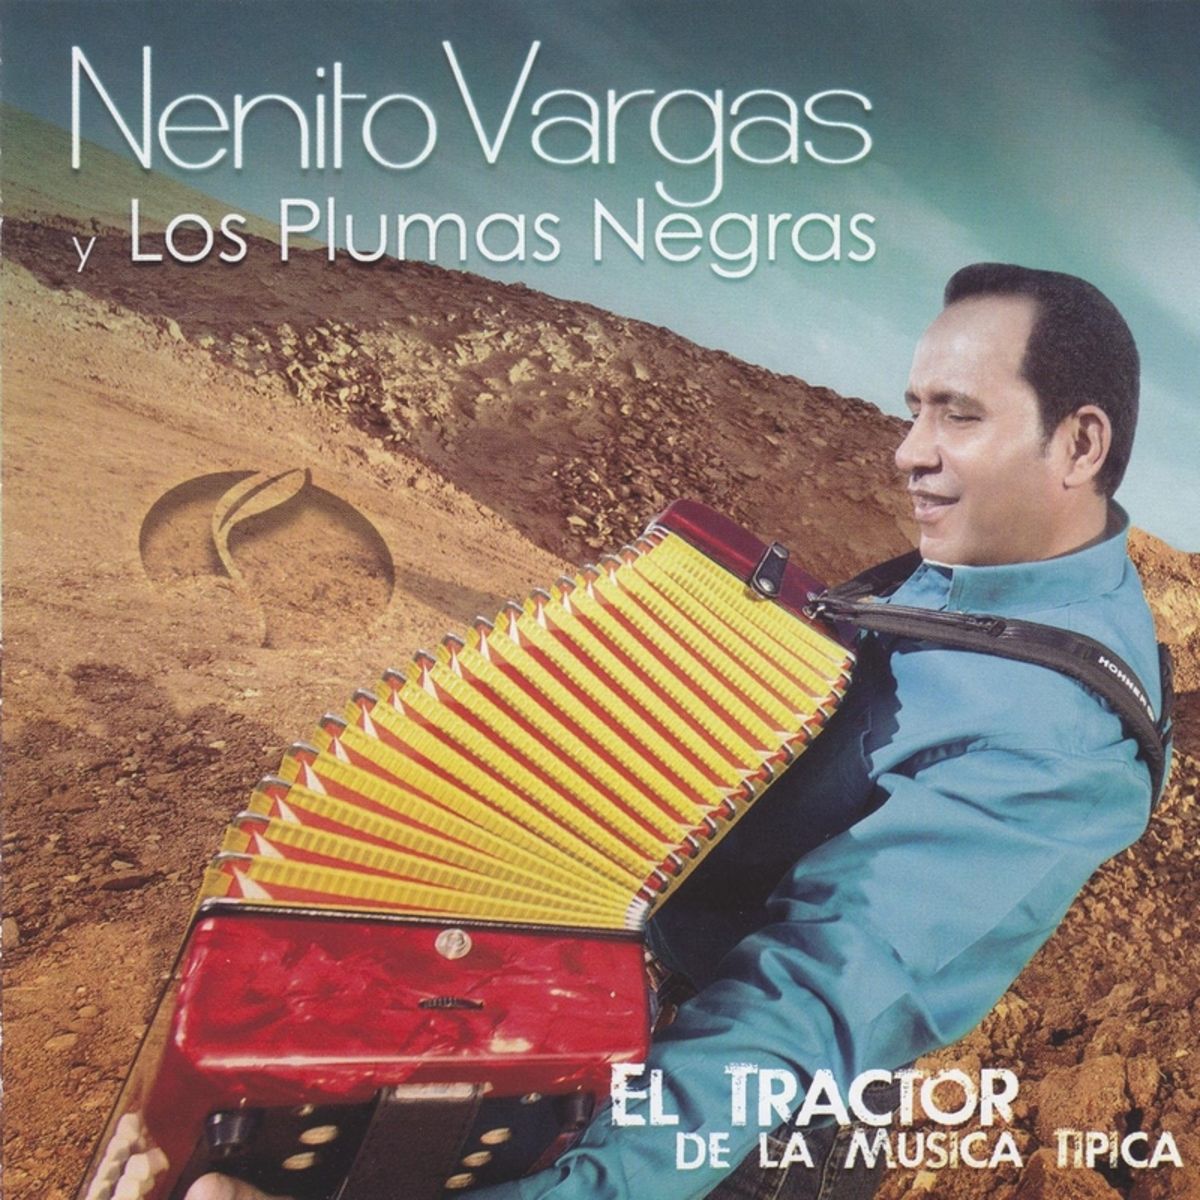 6 - Nenito Vargas y los Plumas Negras - No Me da Na.mp3